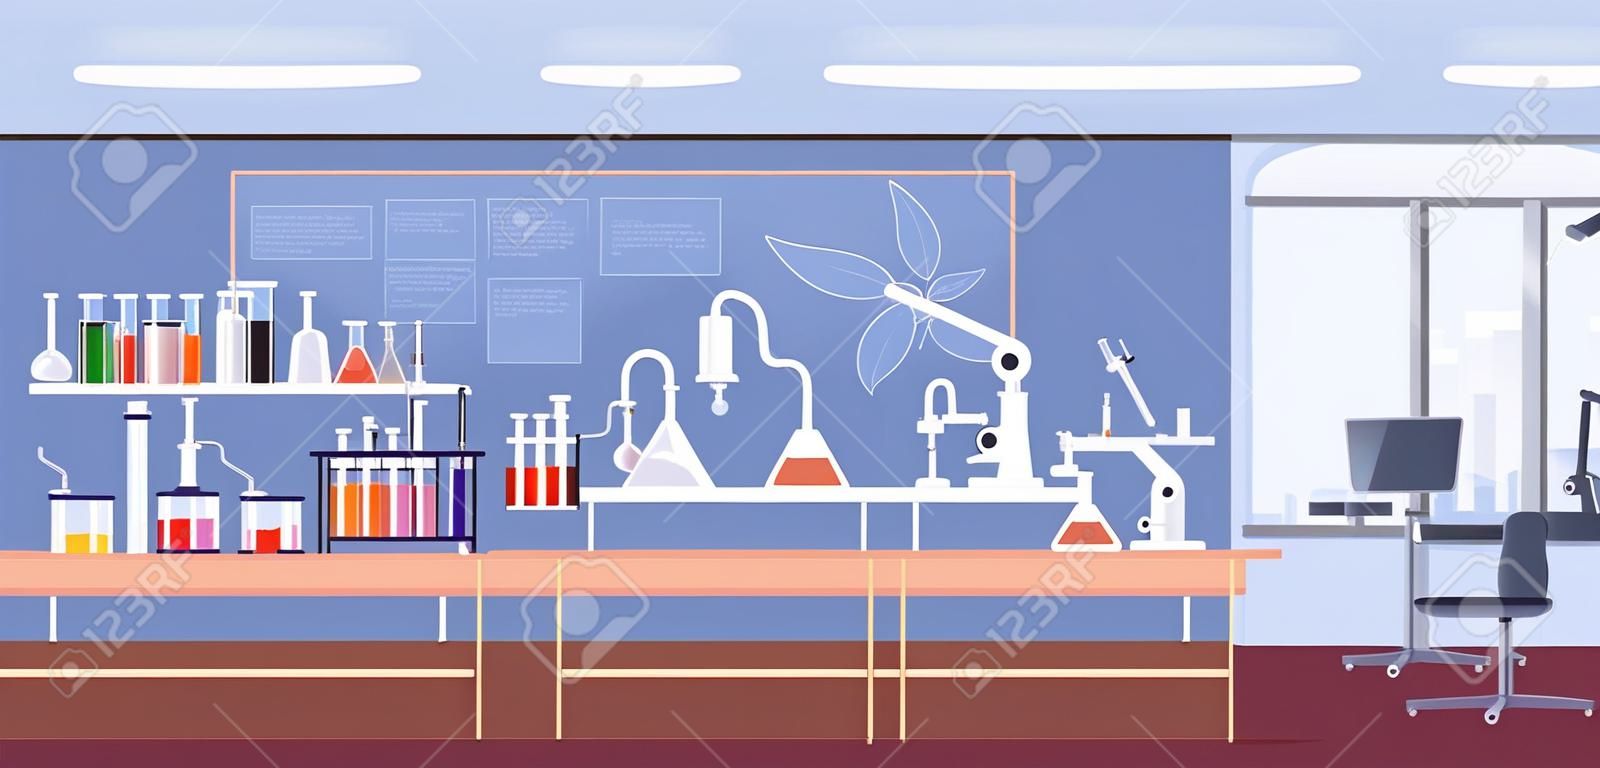 Interior de laboratório químico com móveis, microscópio, frascos e tubos. Experiência na sala de aula de química na escola. Ilustração colorida plana do vetor do desenho animado da sala de pesquisa com equipamento